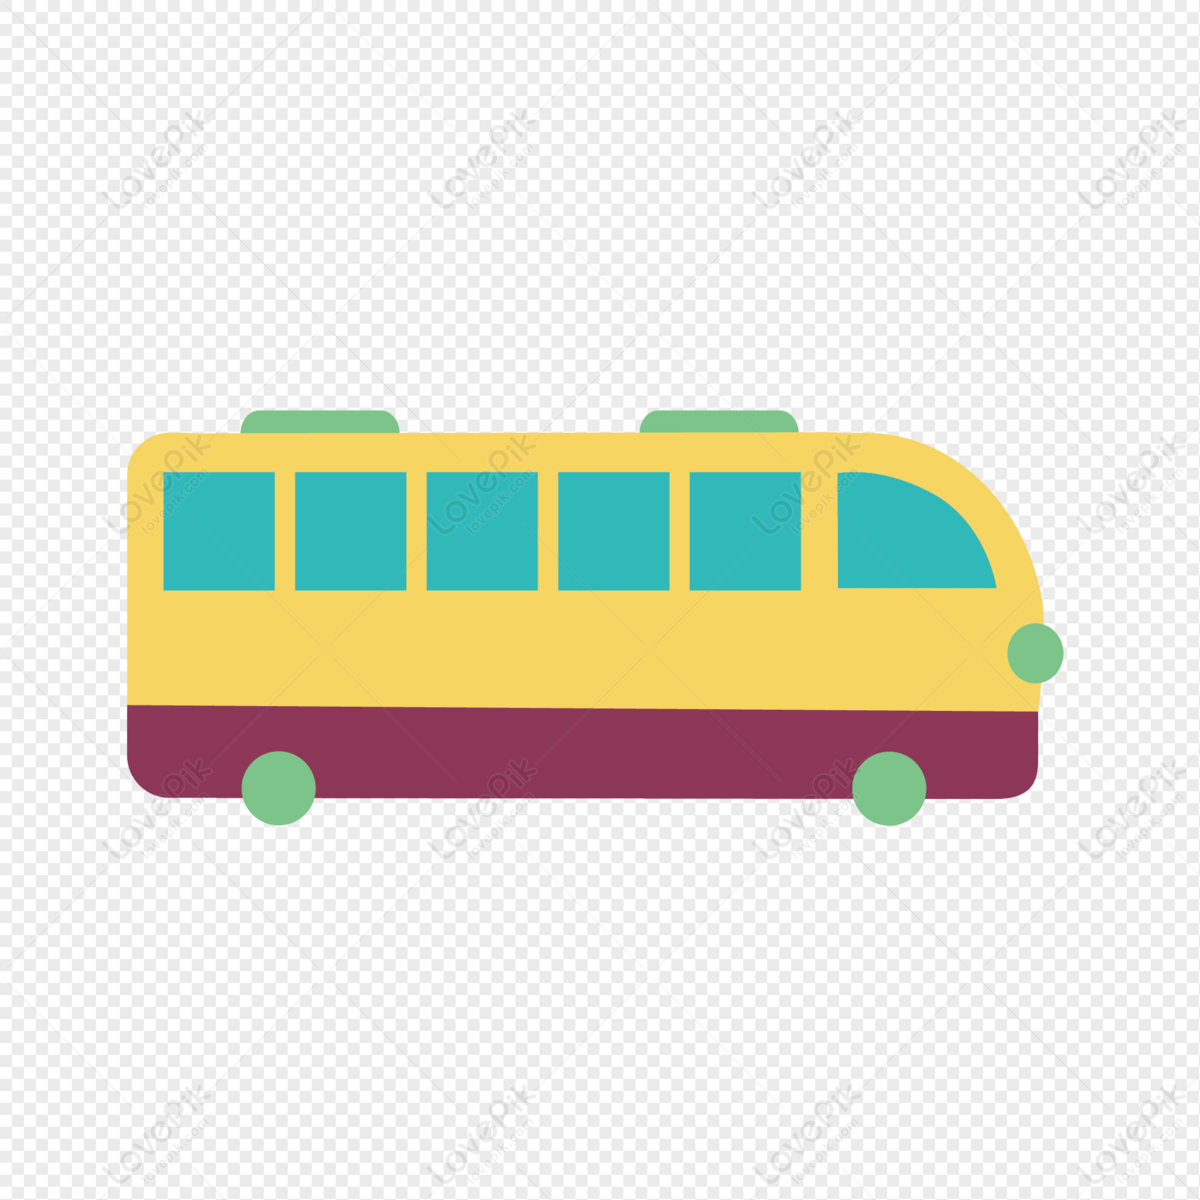 Xe buýt màu vàng PNG rực rỡ sẽ đem đến cho bạn một cảm giác vui tươi và ấm áp. Hãy xem hình ảnh của chúng để tận hưởng một màu sắc đầy sức sống và tươi mới.